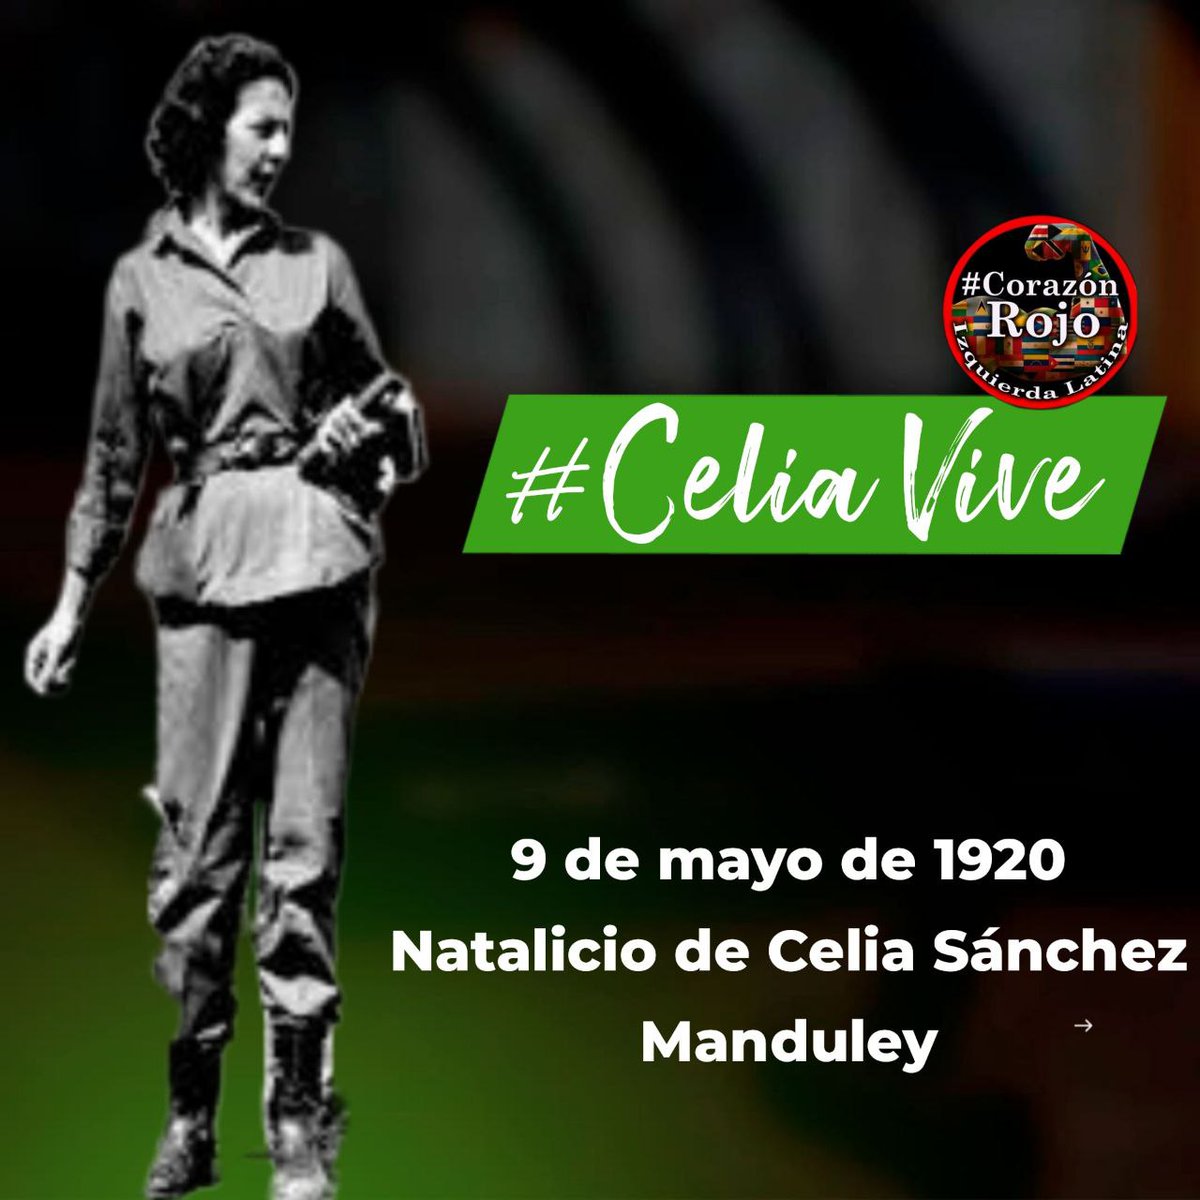 El 9/5/1920 nacía Celia Esther de los Desamparados Sánchez Manduley. Su ejemplo de combatiente revolucionaria, fiel e incansable perdura eternamente porque #CeliaVive.
#IzquierdaLatina #CorazónRojo.